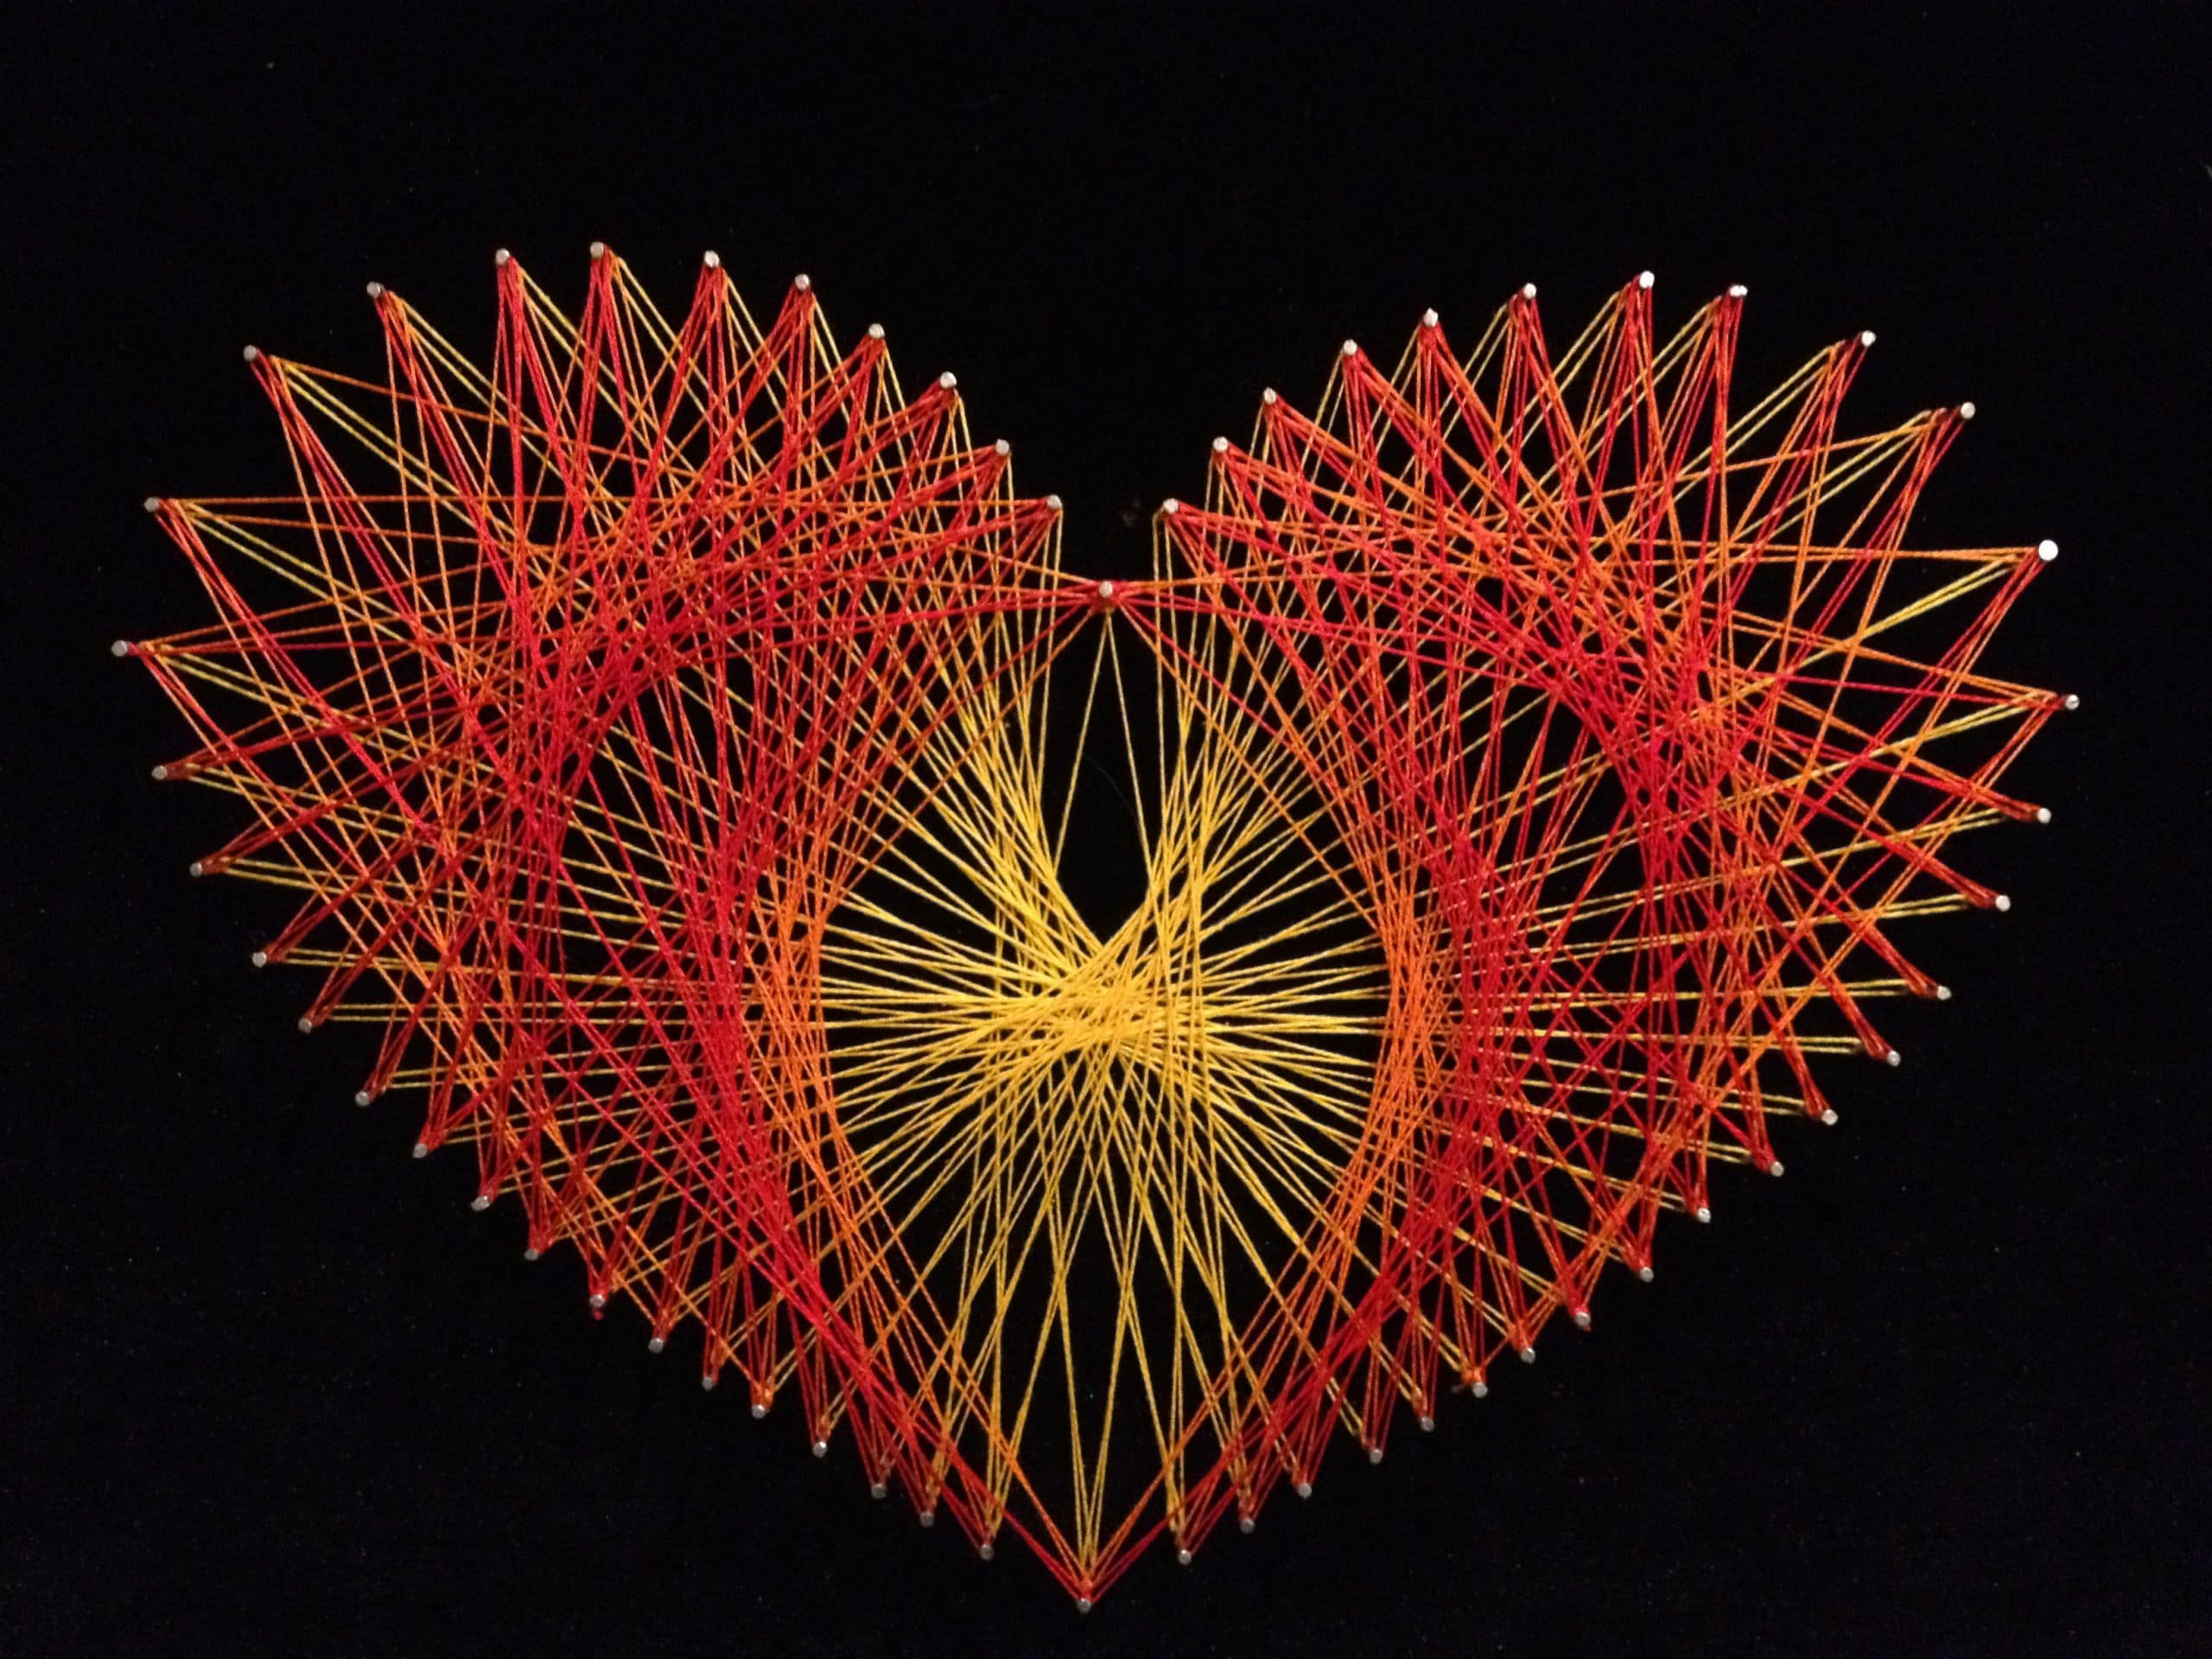 String Art Heart (2013) by Dar Tarrasch, Tel Aviv, Israel